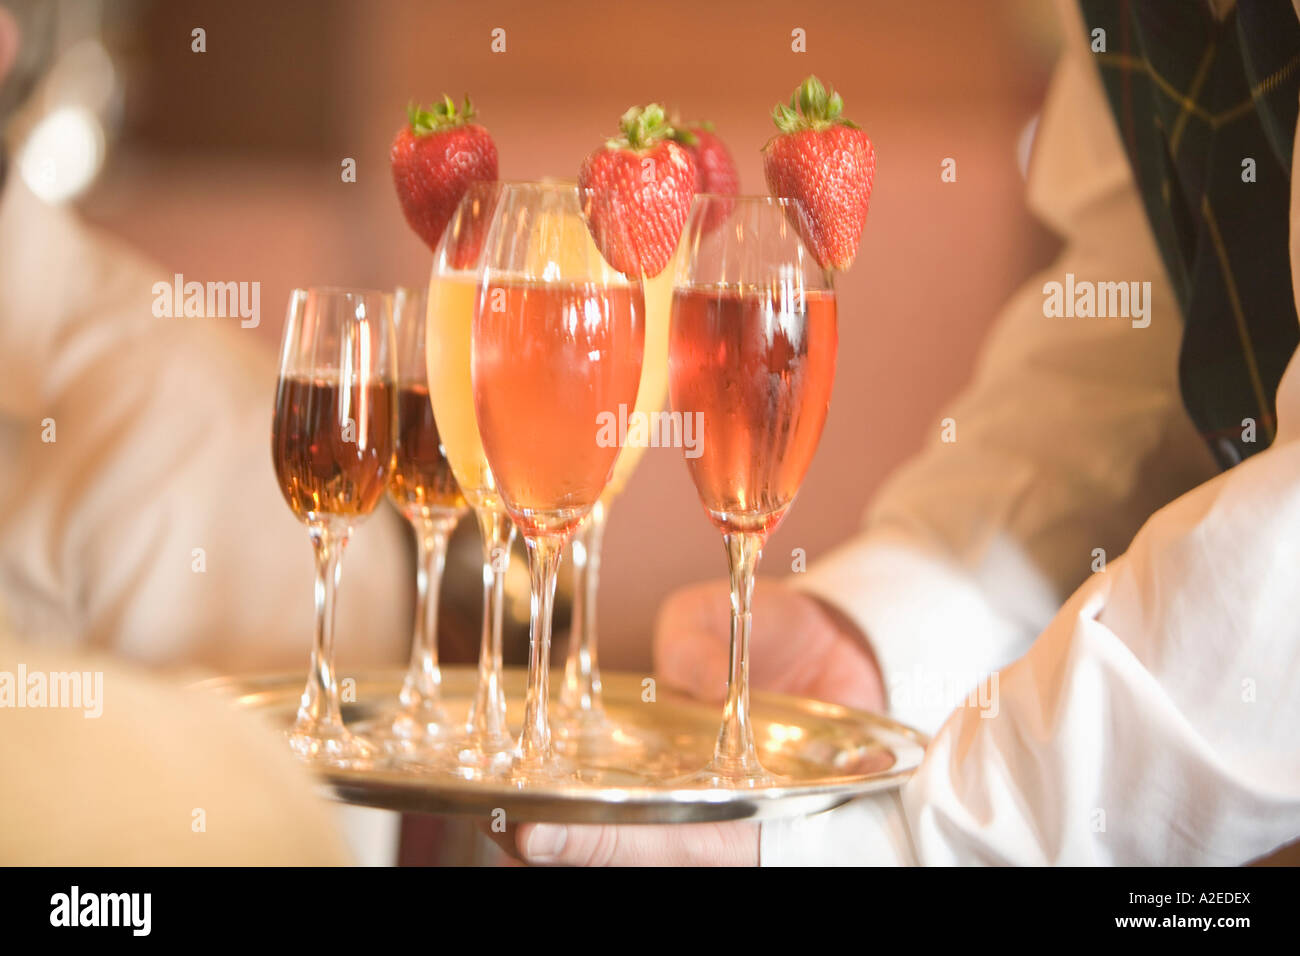 Fruttato bevande essendo servita da un waitor. Foto Stock